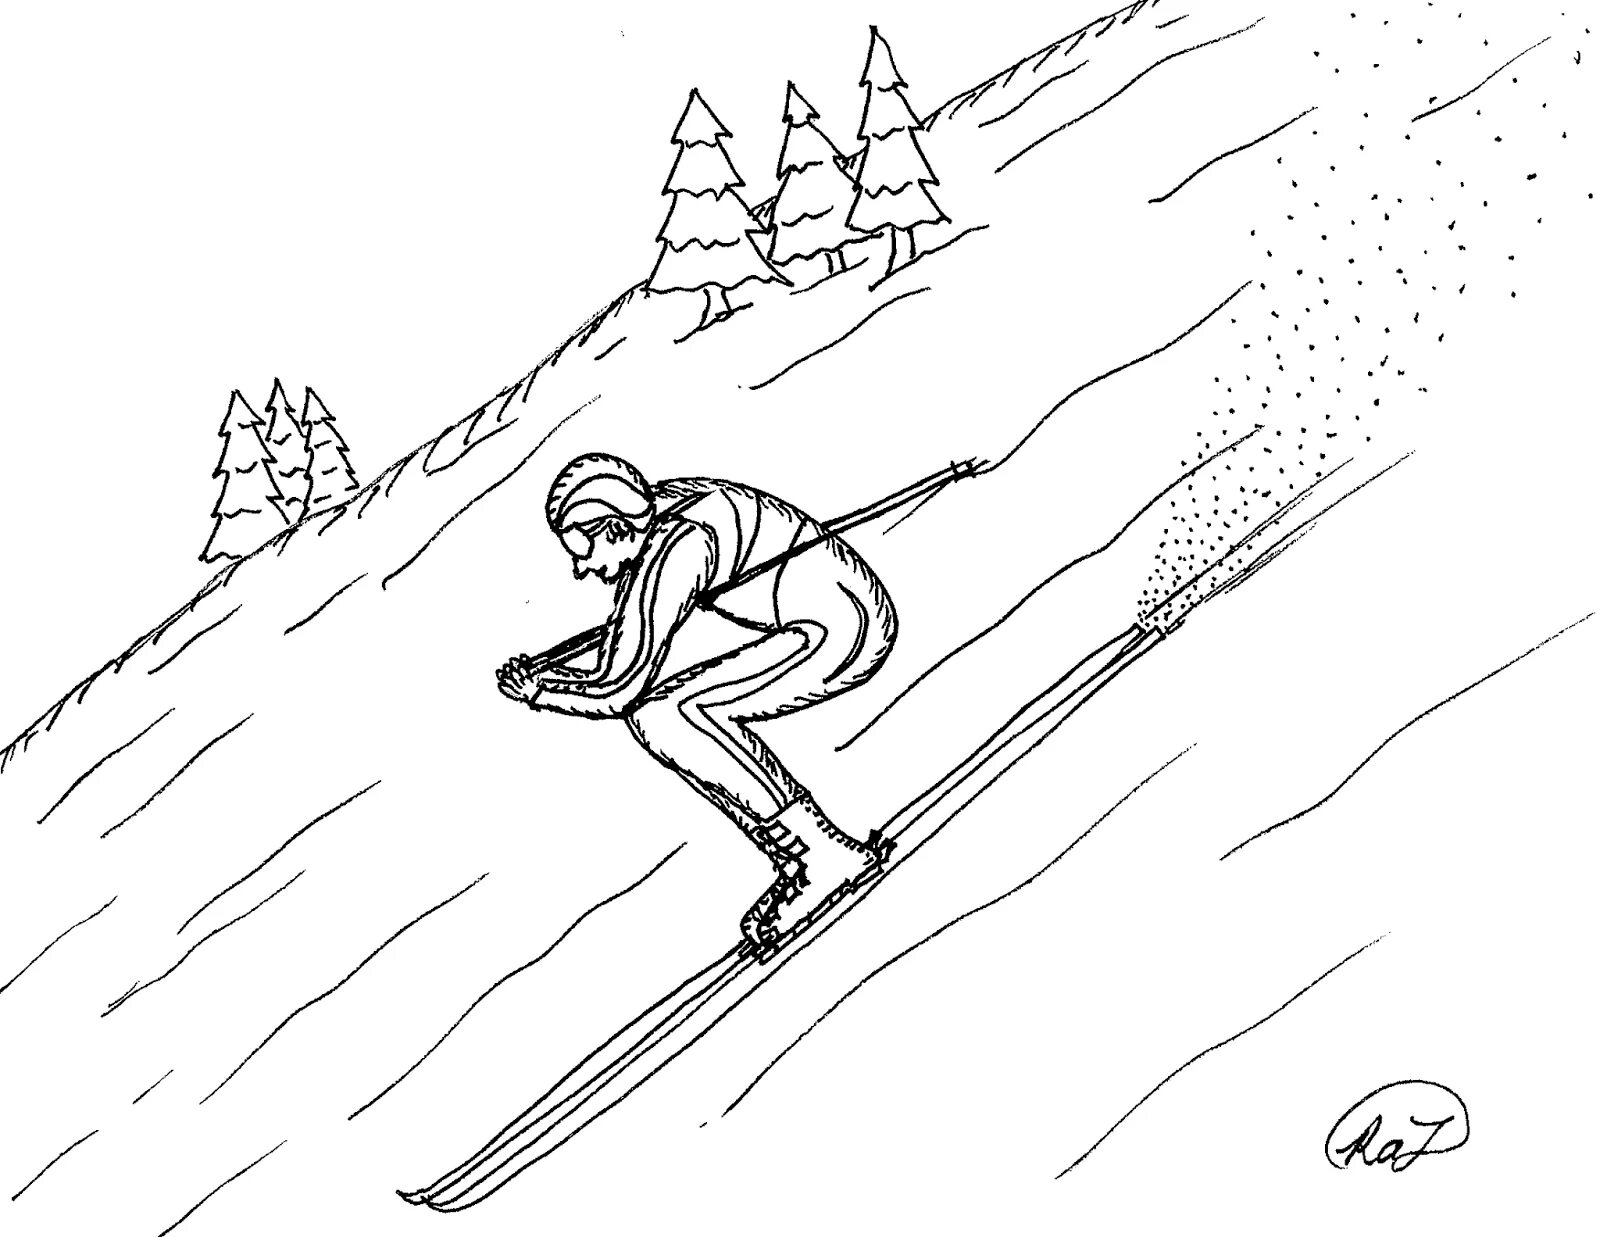 Skier #4